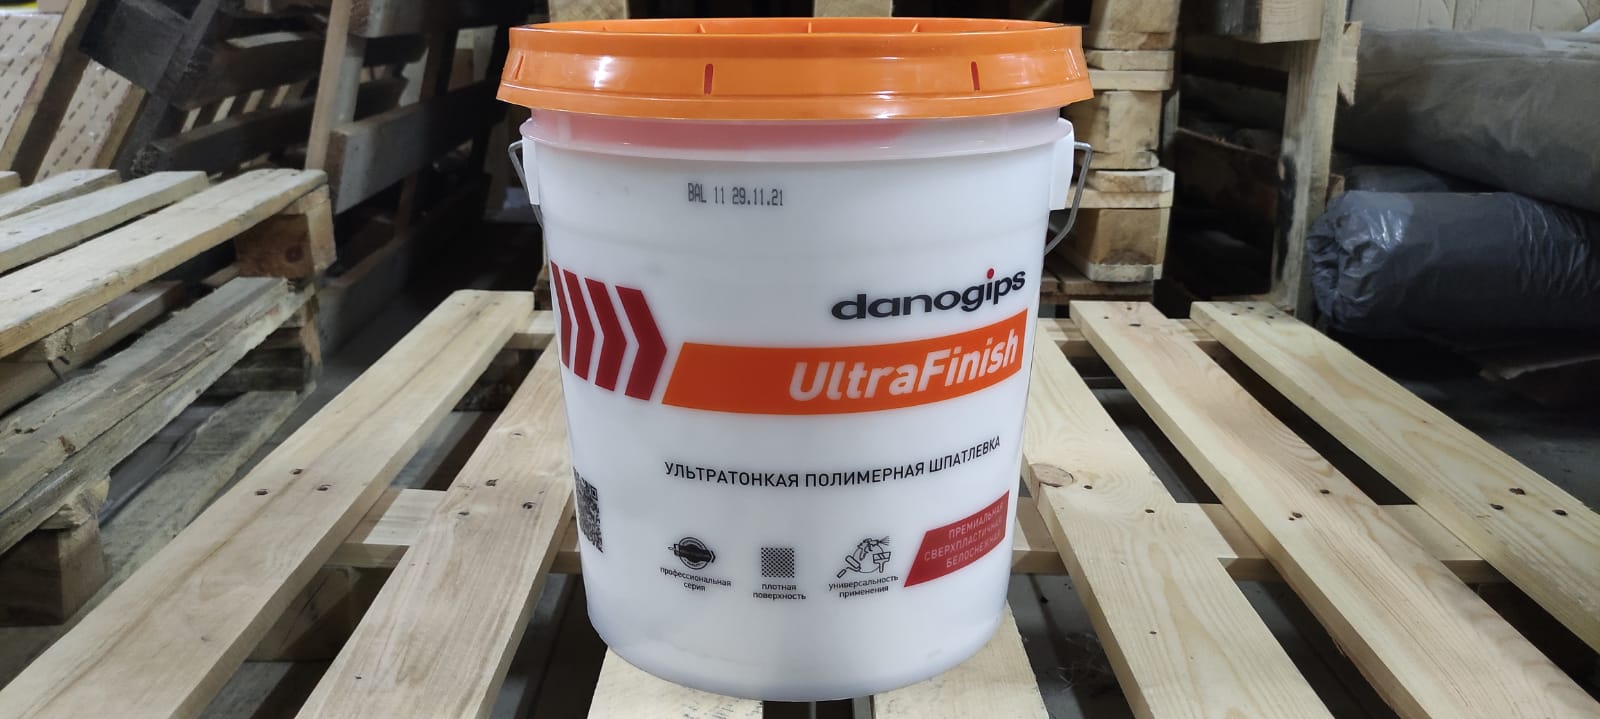 Ультратонкая финишная полимерная шпатлевка Danogips UltraFinish / Даногипс УльтраФиниш 28 кг (17 л)